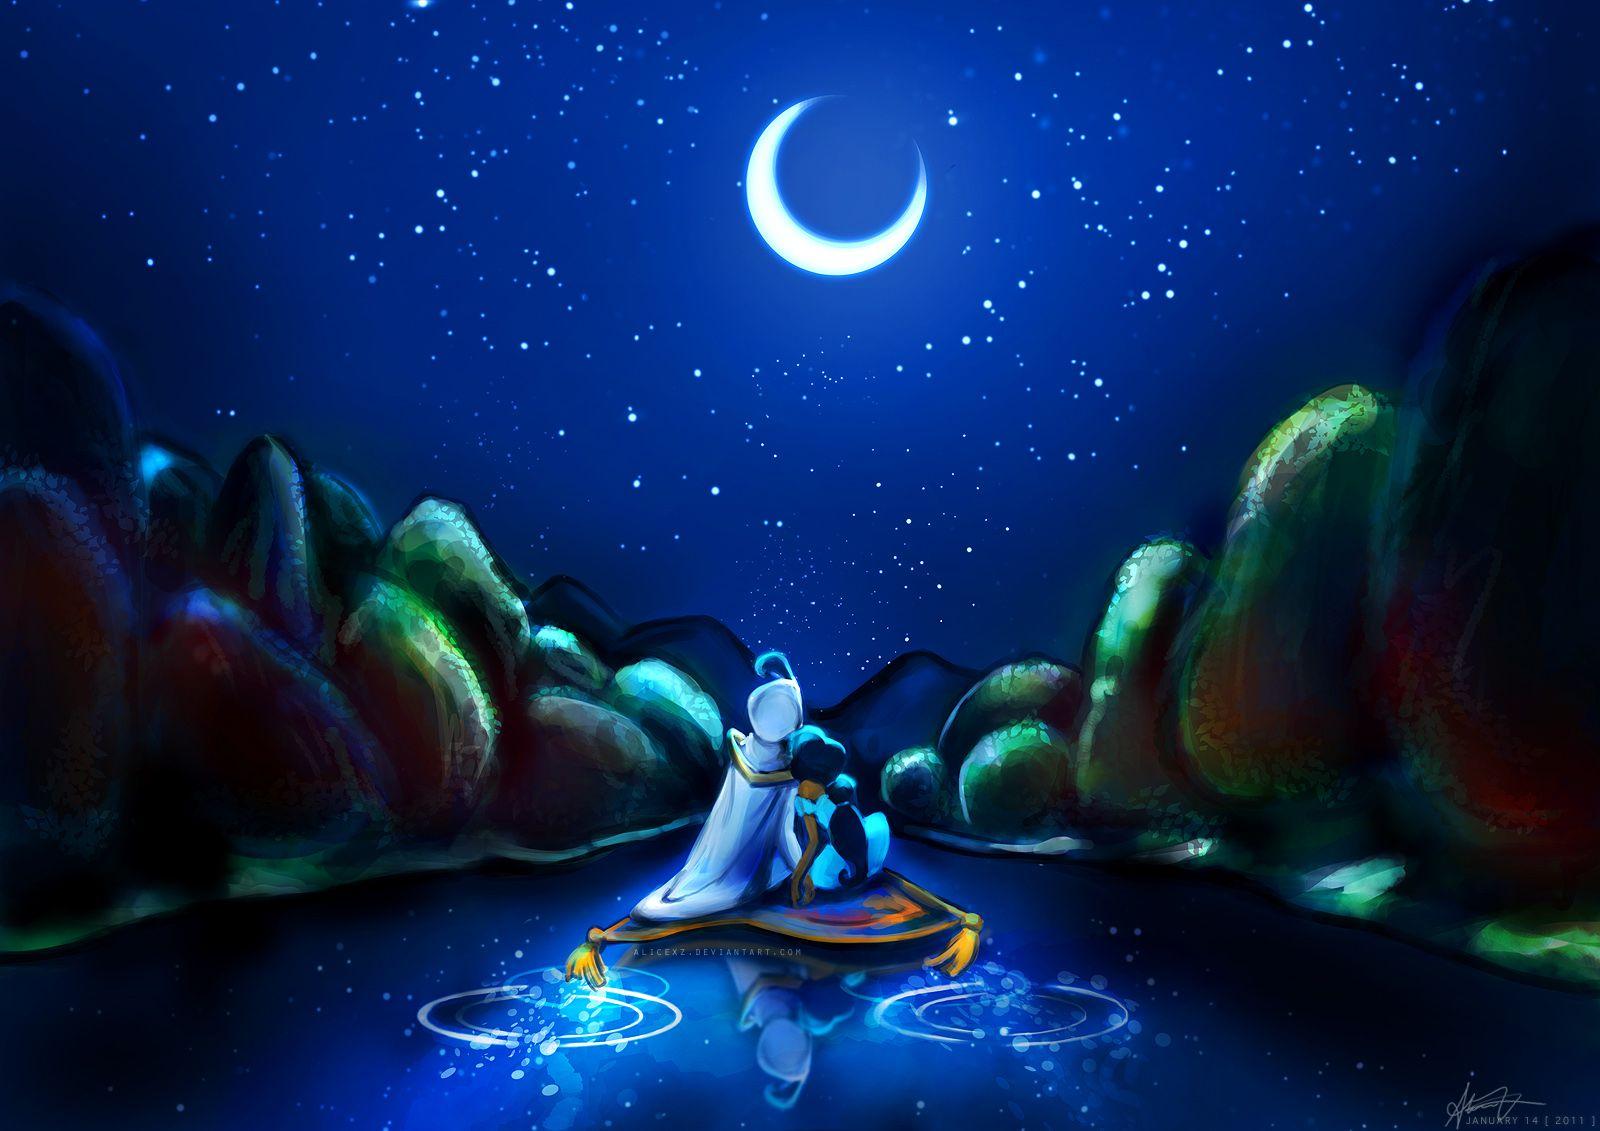 Aladdin Wallpaper, 45 PC Aladdin Pics in Fantastic Collection